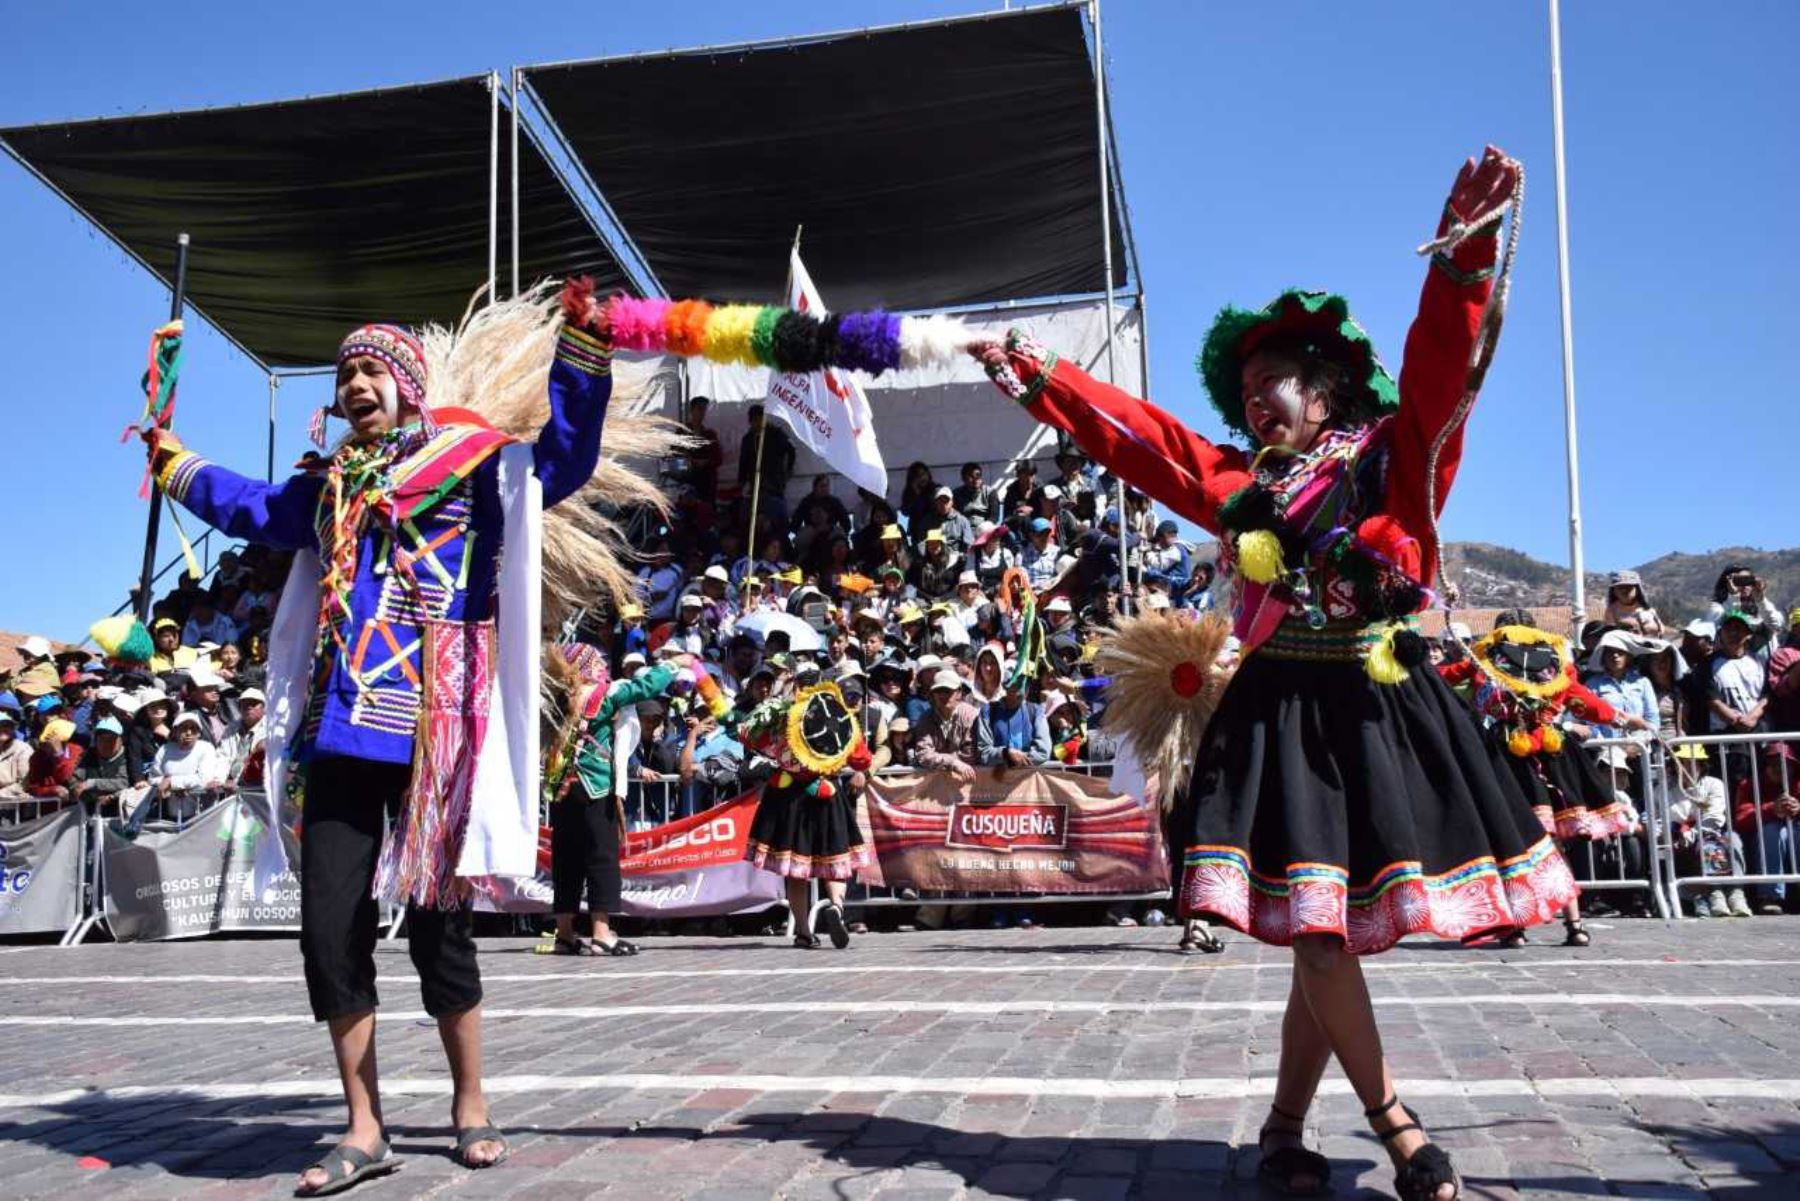 Con la presentación de artistas musicales, danzas y un festival gastronómico se desarrolla hoy el tradicional “Kacharpari” o cierre de fiestas en homenaje a la ciudad del Cusco que durante junio y parte de julio celebró su mes jubilar.